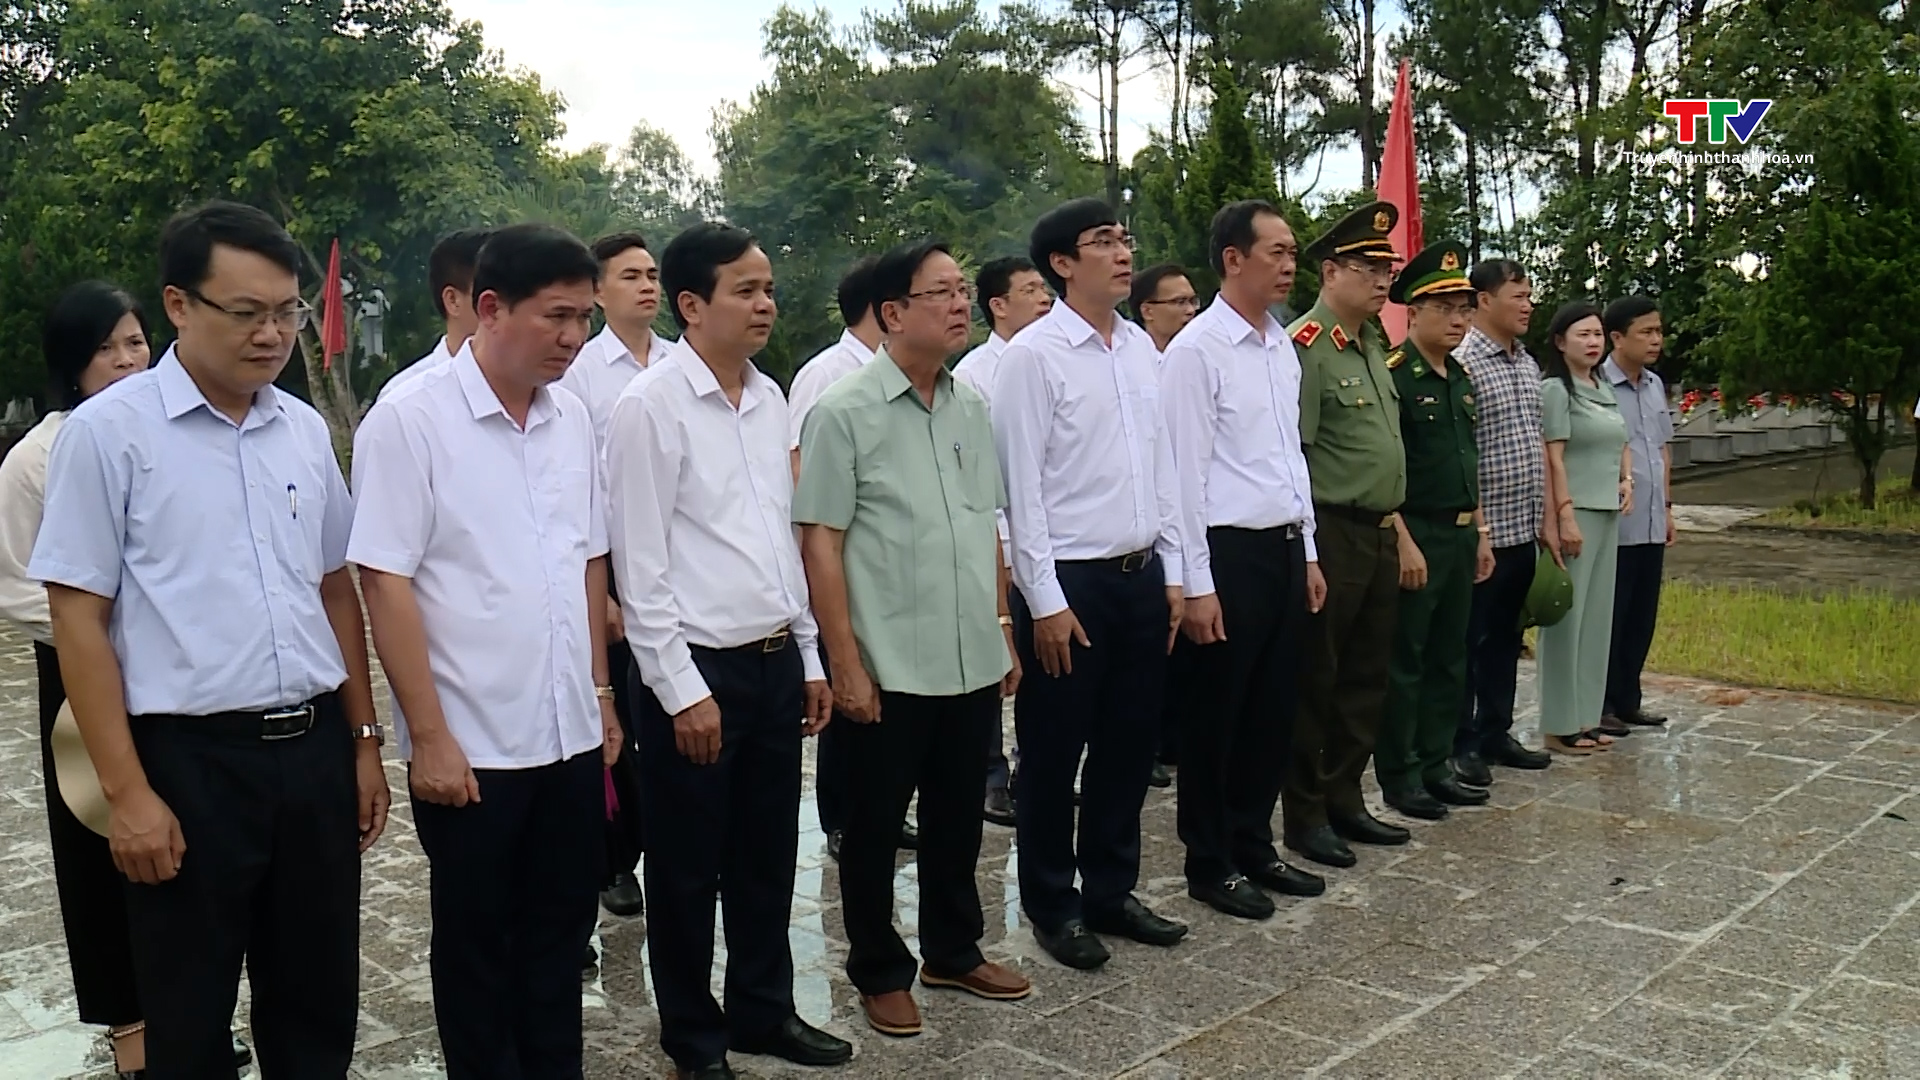 Đồng chí Phó Bí thư Tỉnh ủy Trịnh Tuấn Sinh dâng hương các liệt sỹ đang yên nghỉ tại Quảng Bình và Quảng Trị- Ảnh 3.